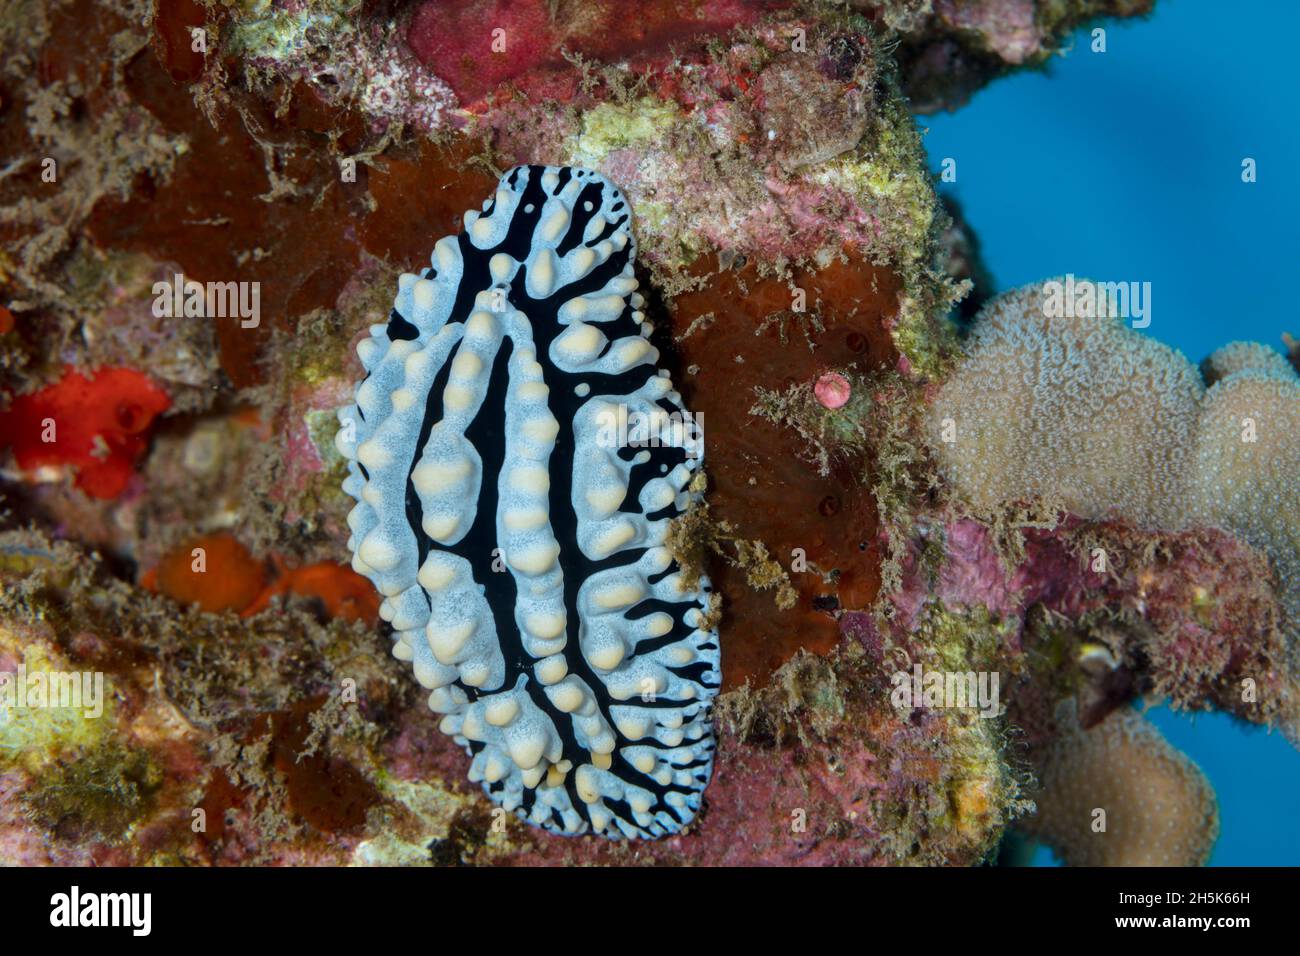 Phyllidia varicosa sea slug; Maui, Hawaii, United States of America Stock Photo